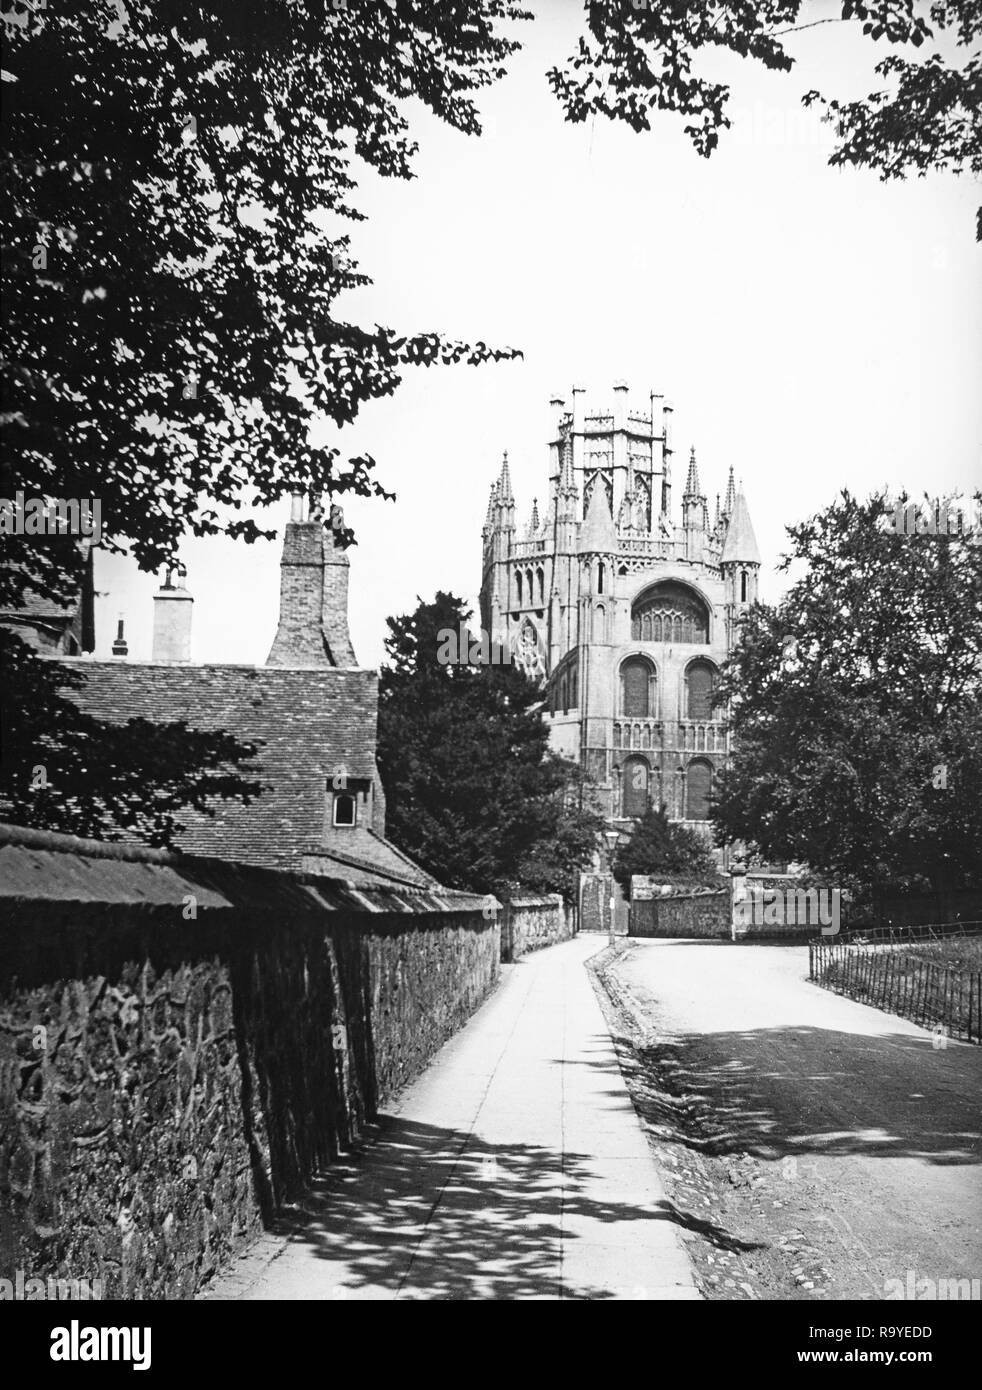 Späten Viktorianischen schwarz-weiß Foto der Kathedrale von Ely, Cambridgeshire, England. Die Kathedrale hat seinen Ursprung in der AD672 Wenn St Etheldreda eine Abtei Kirche gebaut. Das heutige Gebäude stammt aus 1083, und der Kathedrale Status wurde es im Jahre 1109 gewährt. Bis zur Reformation war es die Kirche des Hl. Etheldreda und St. Peter, bei dem Punkt, den es wie die Kathedrale Kirche der heiligen und ungeteilten Dreifaltigkeit von Ely wiedergegründet wurde, weiterhin als wichtigste Kirche der Diözese von Ely, Cambridgeshire. Stockfoto